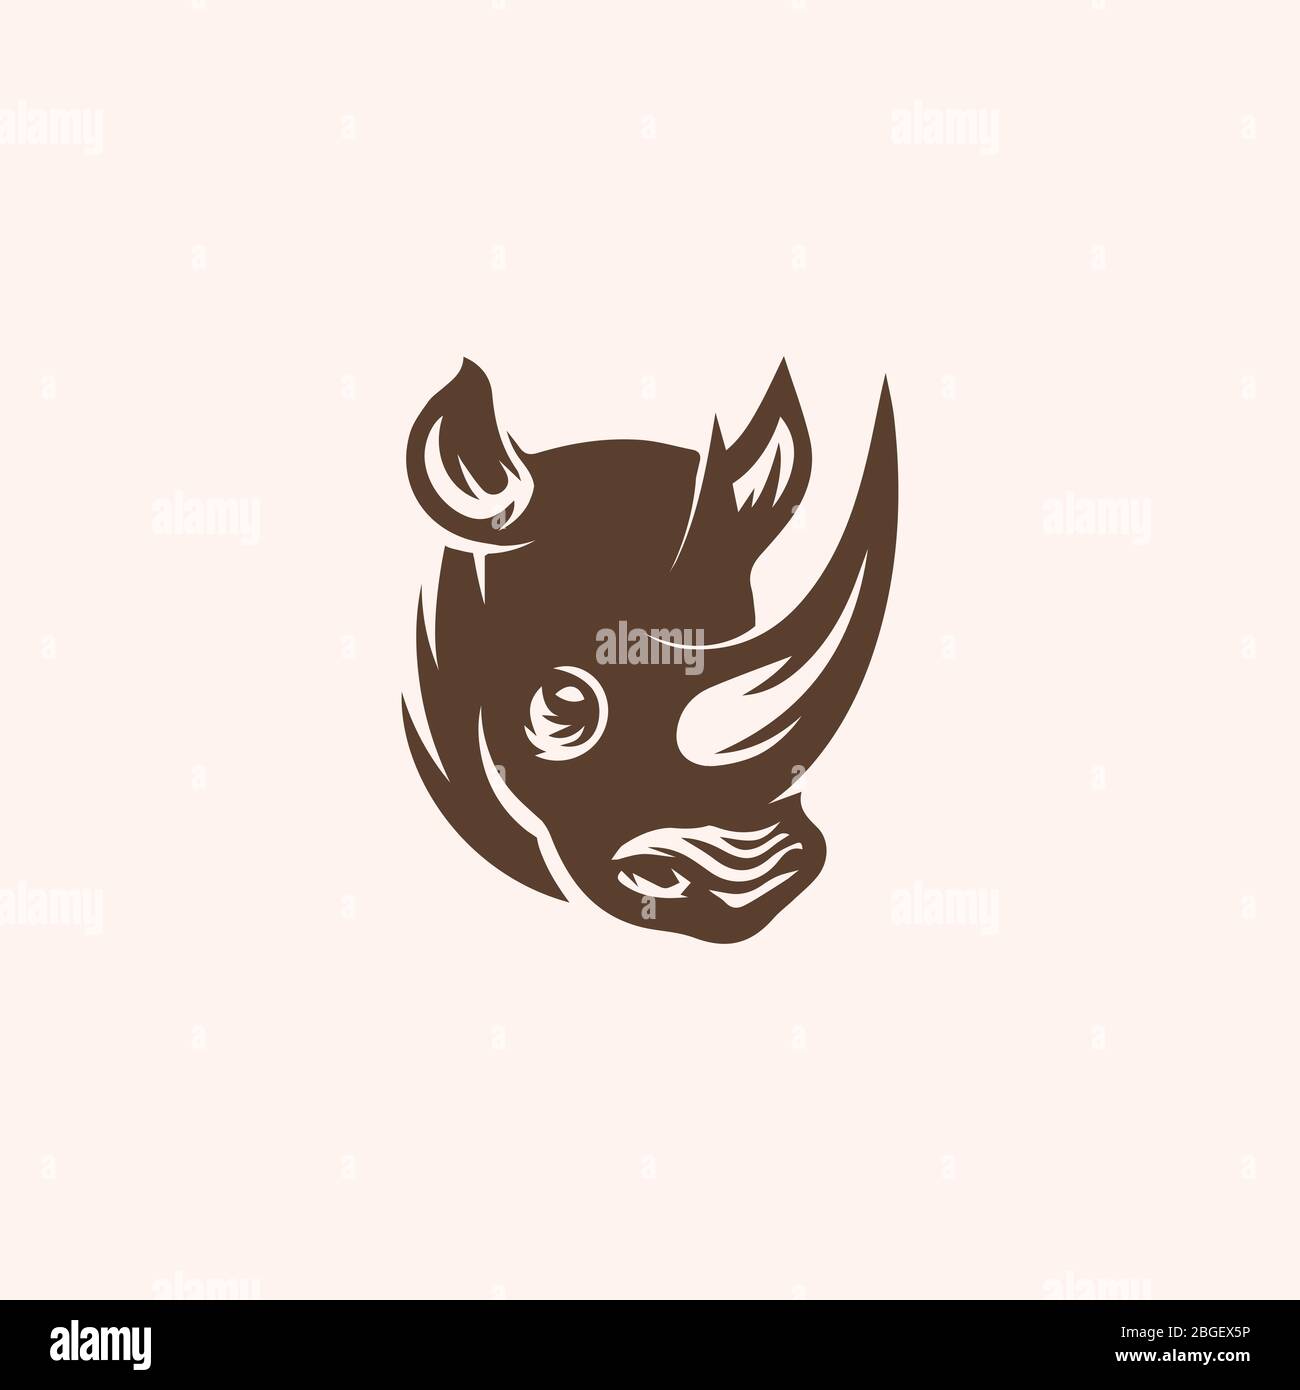 Rhino logo design template Stock Vector